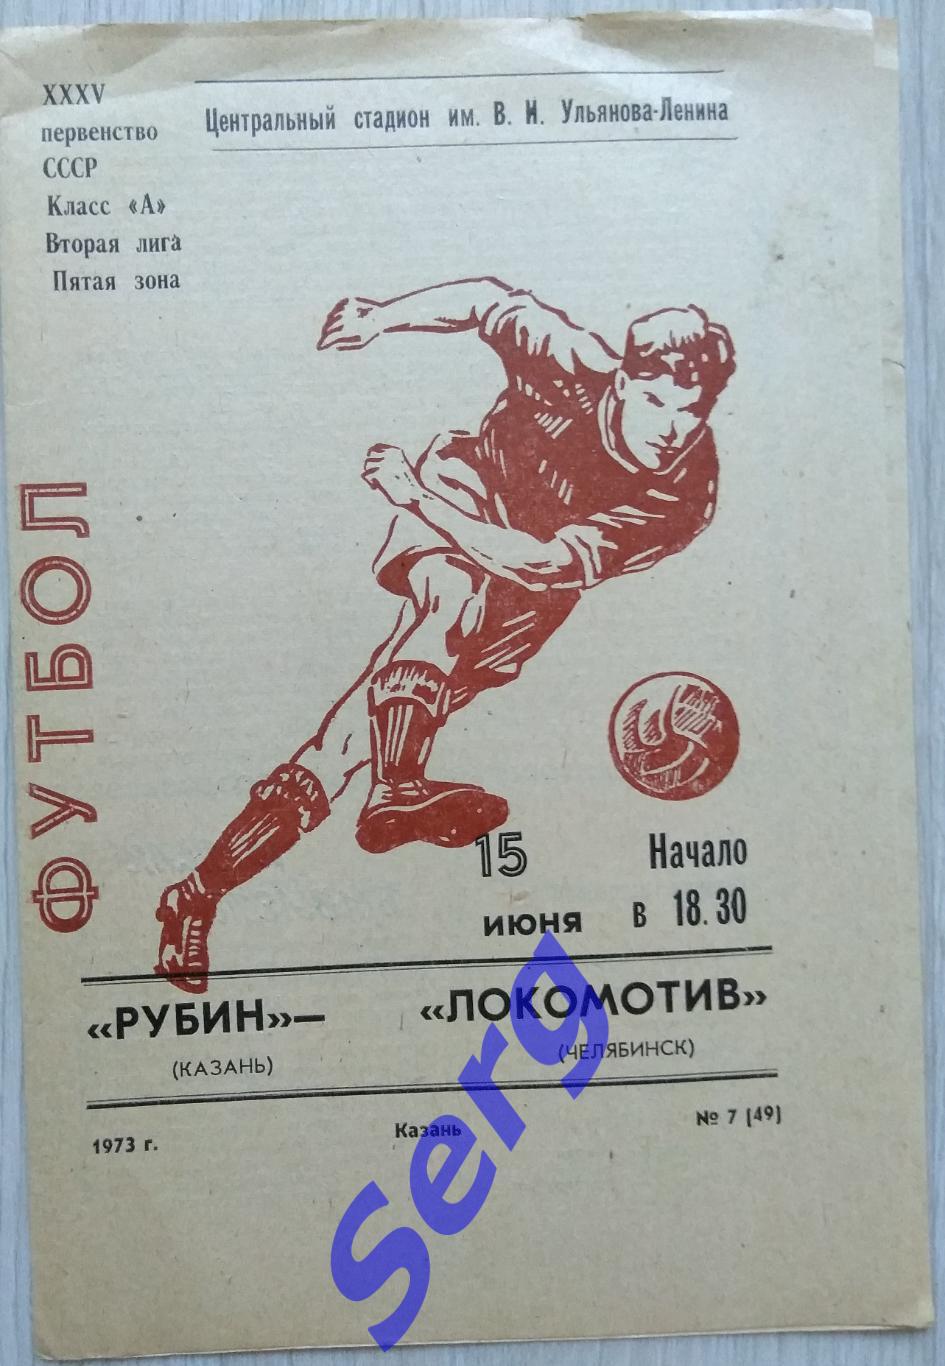 Рубин Казань - Локомотив Челябинск - 15 июня 1973 год